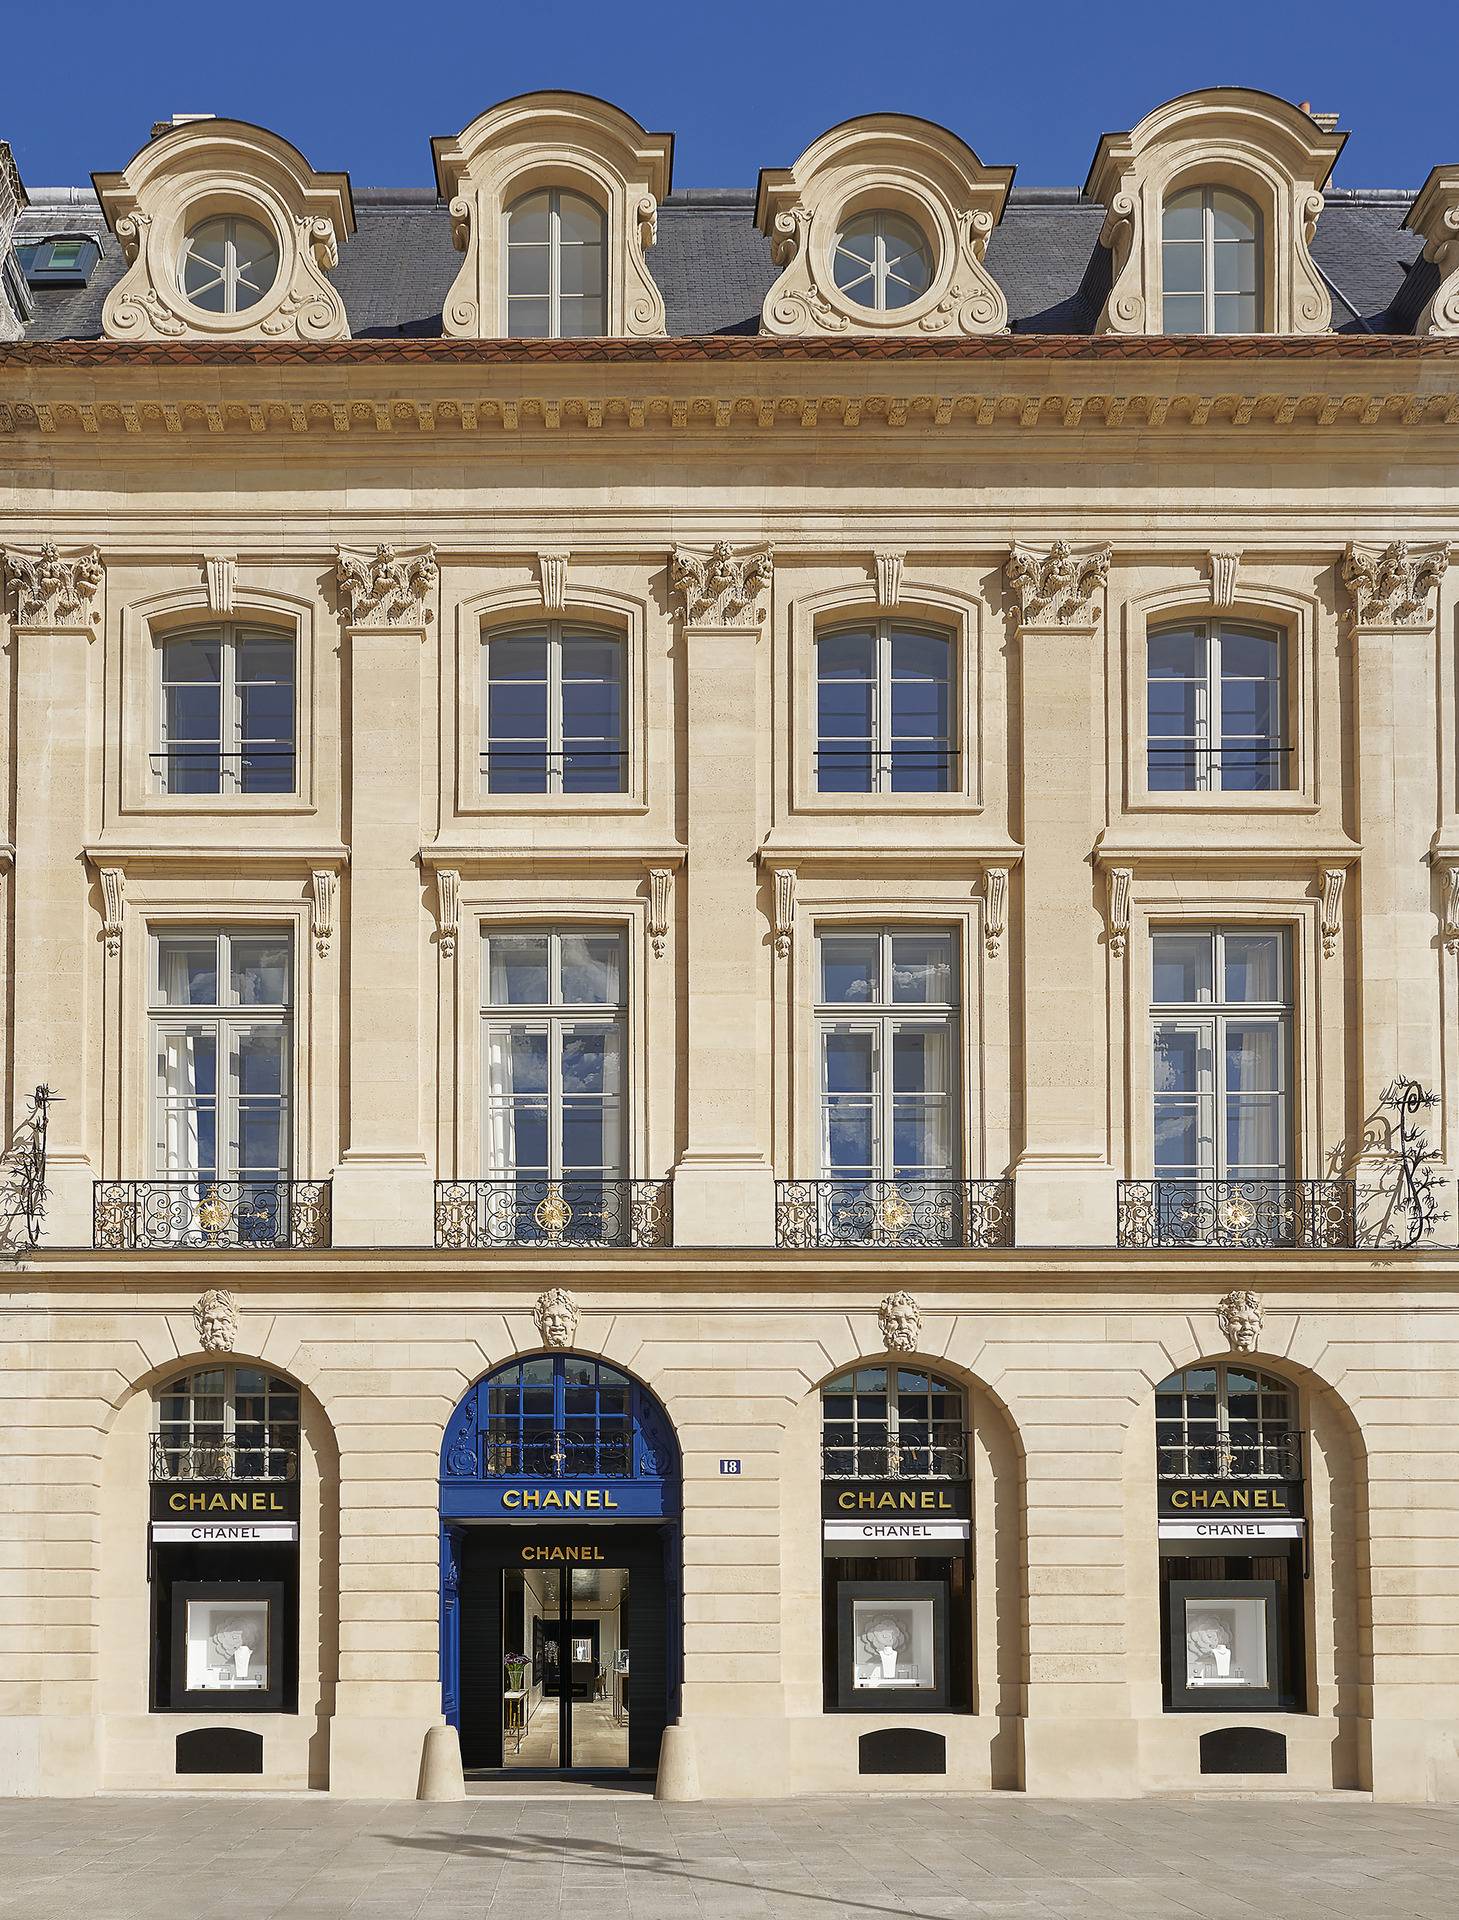 CHANEL Patrimoine 典藏館藏身巴黎 Place Vendôme 18號（圖片來源：CHANEL）